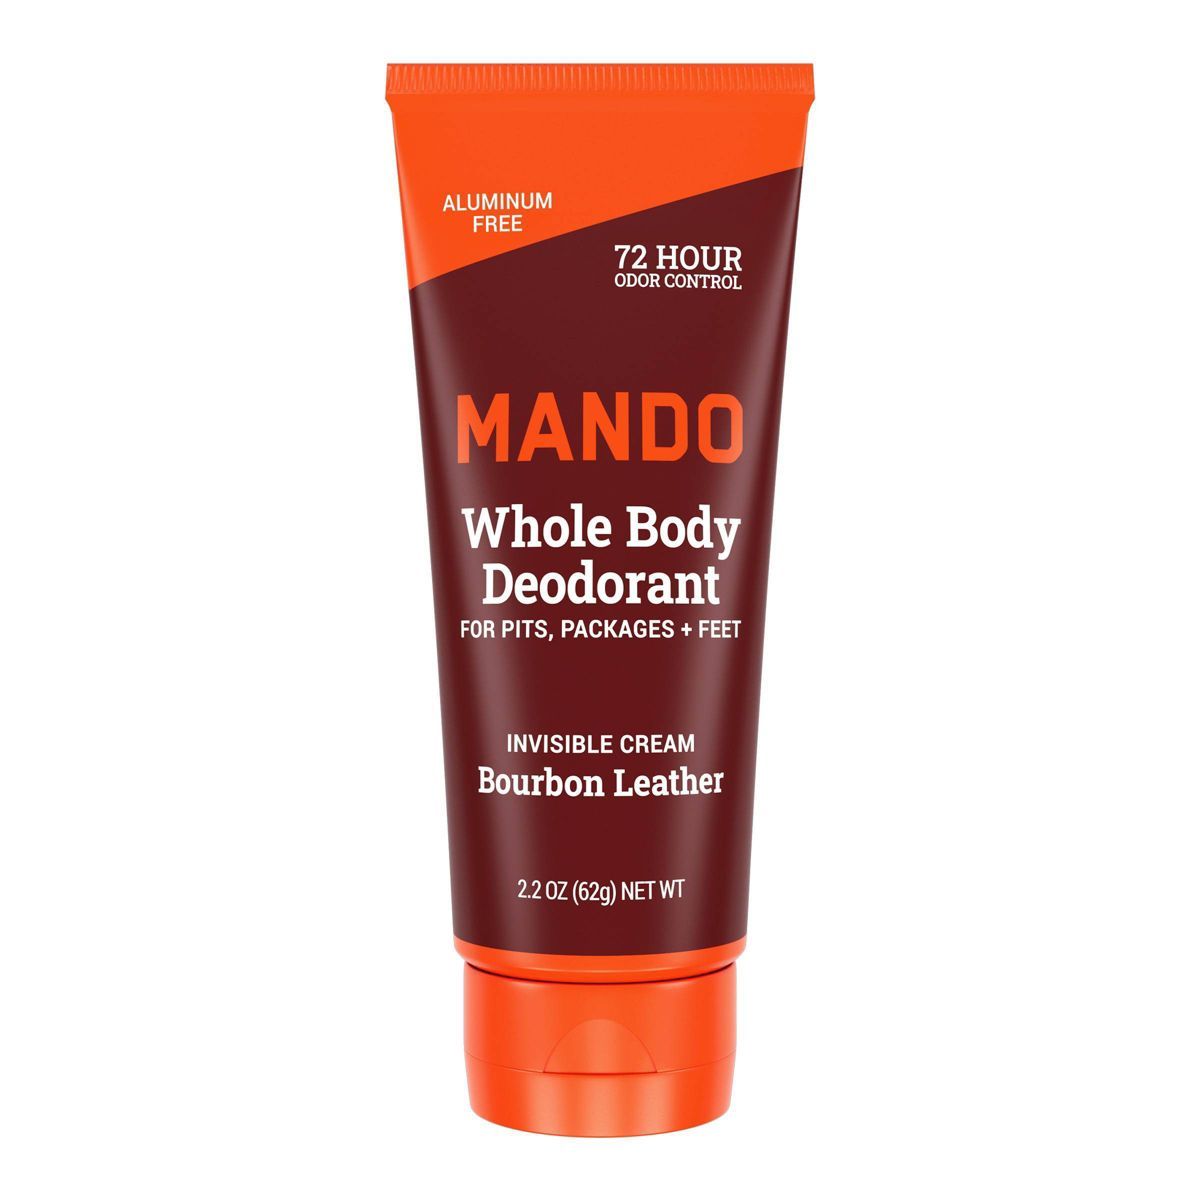 Mando Whole Body Deodorant - Men’s Aluminum-Free Invisible Cream Deodorant - Bourbon Leather - ... | Target